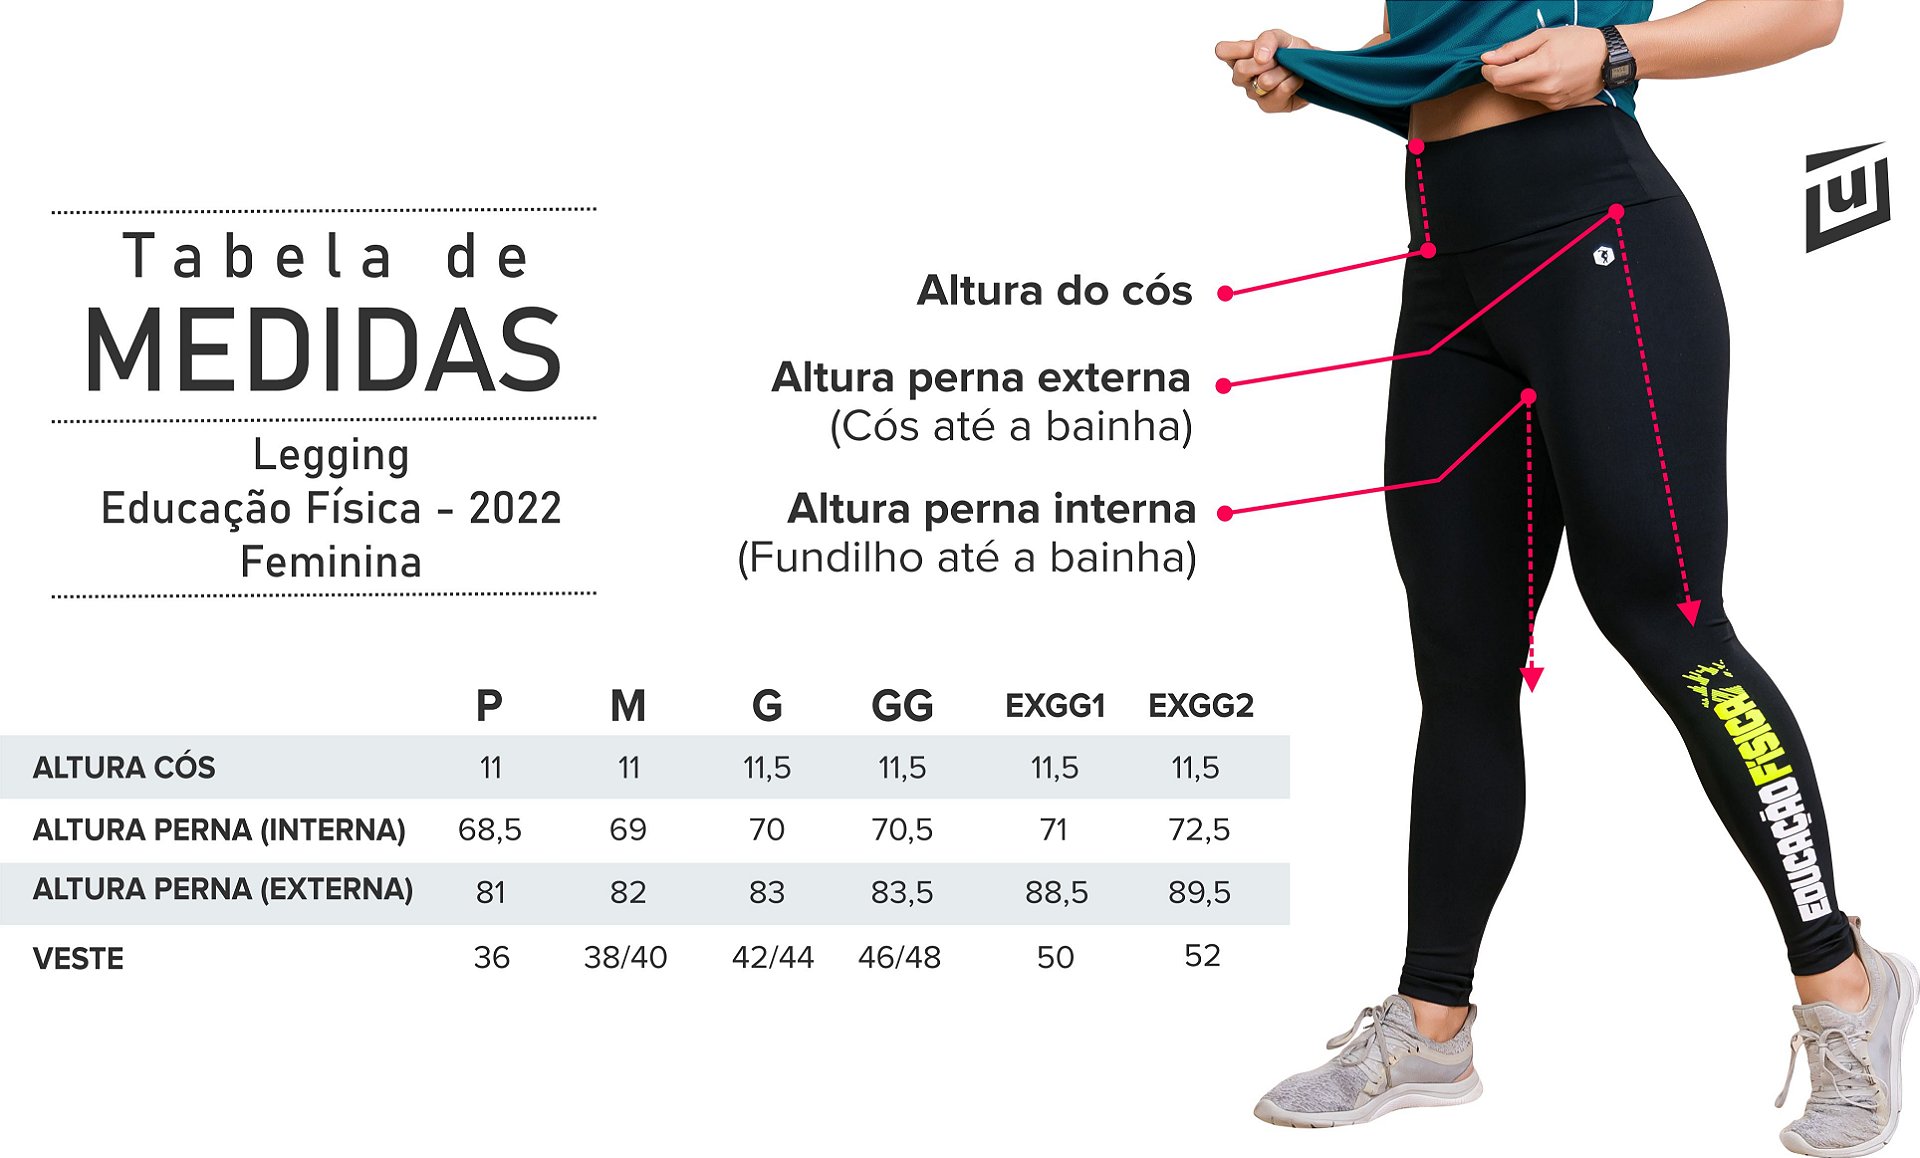 Legging Educação Física 2022 - feminina - Loja Umbilical